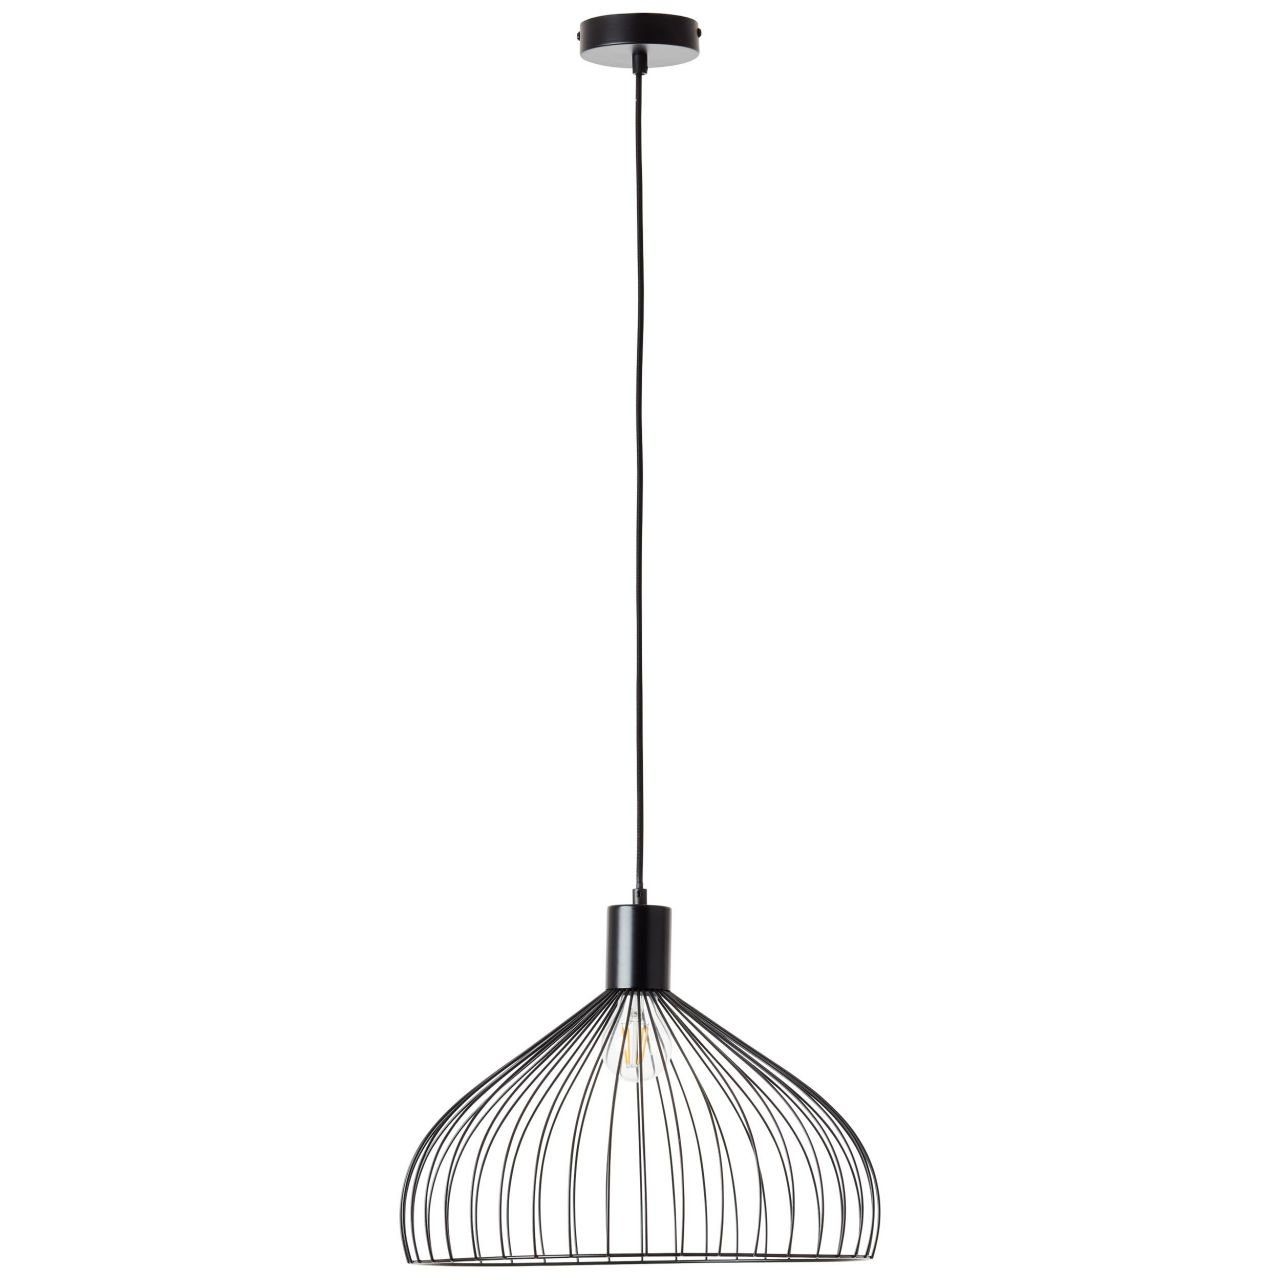 Brilliant Pendelleuchte Lampe, schwarz matt, E27, Blacky A60, Pendelleuchte 40W, Blacky, 1x 40cm Kabel